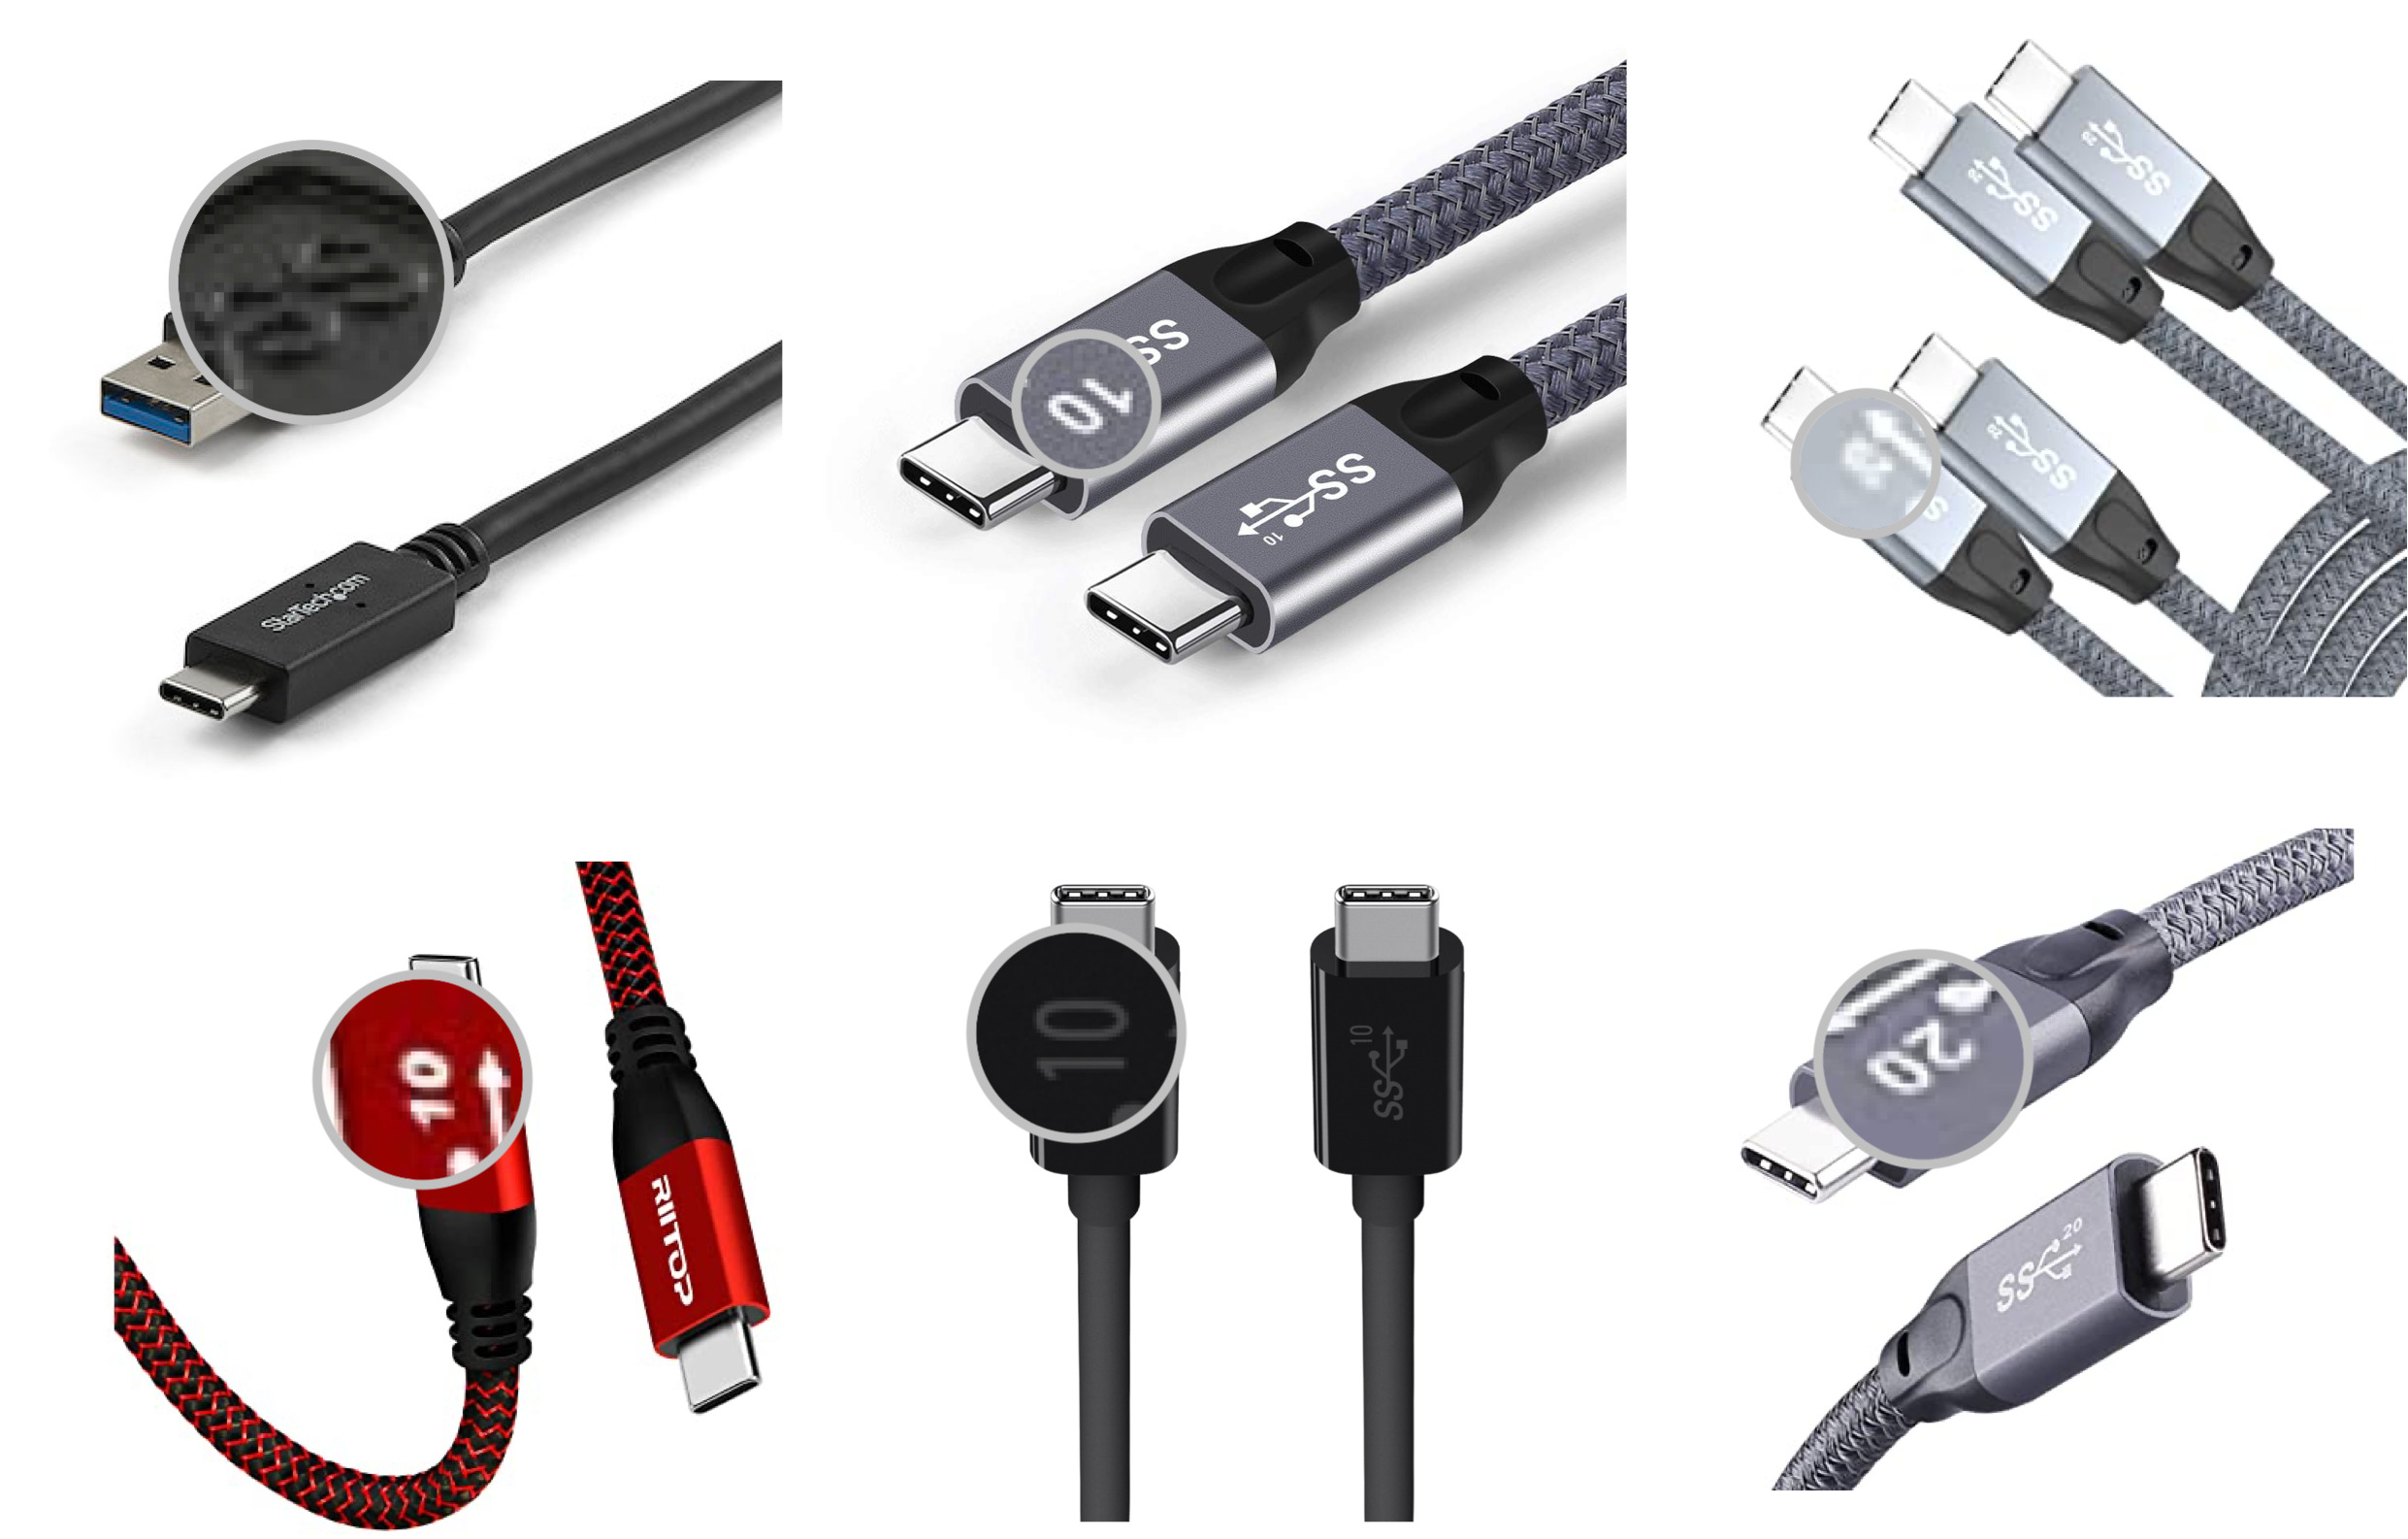 Belkin USB-C Multiport Adapter - Single 4k HDMI - 60W PD - Multimedia Hub -  Net Universe Shop